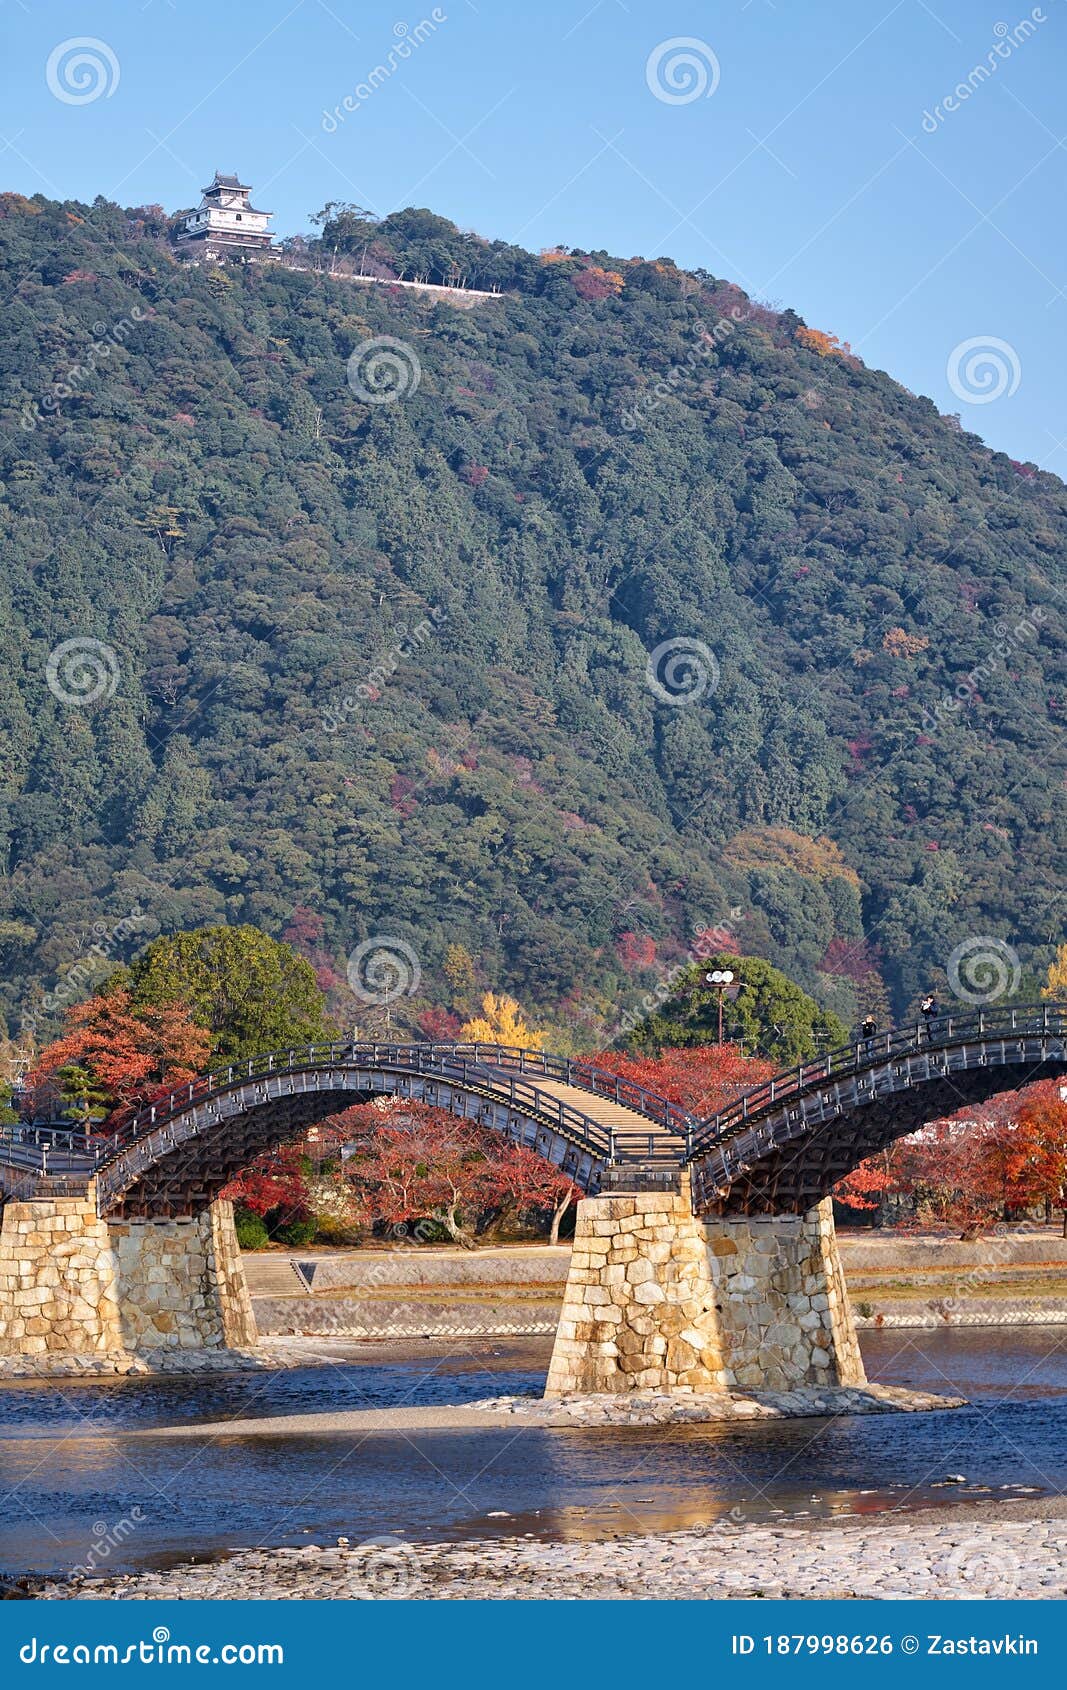 kintai bridge in iwakuni city in the fall,  japan